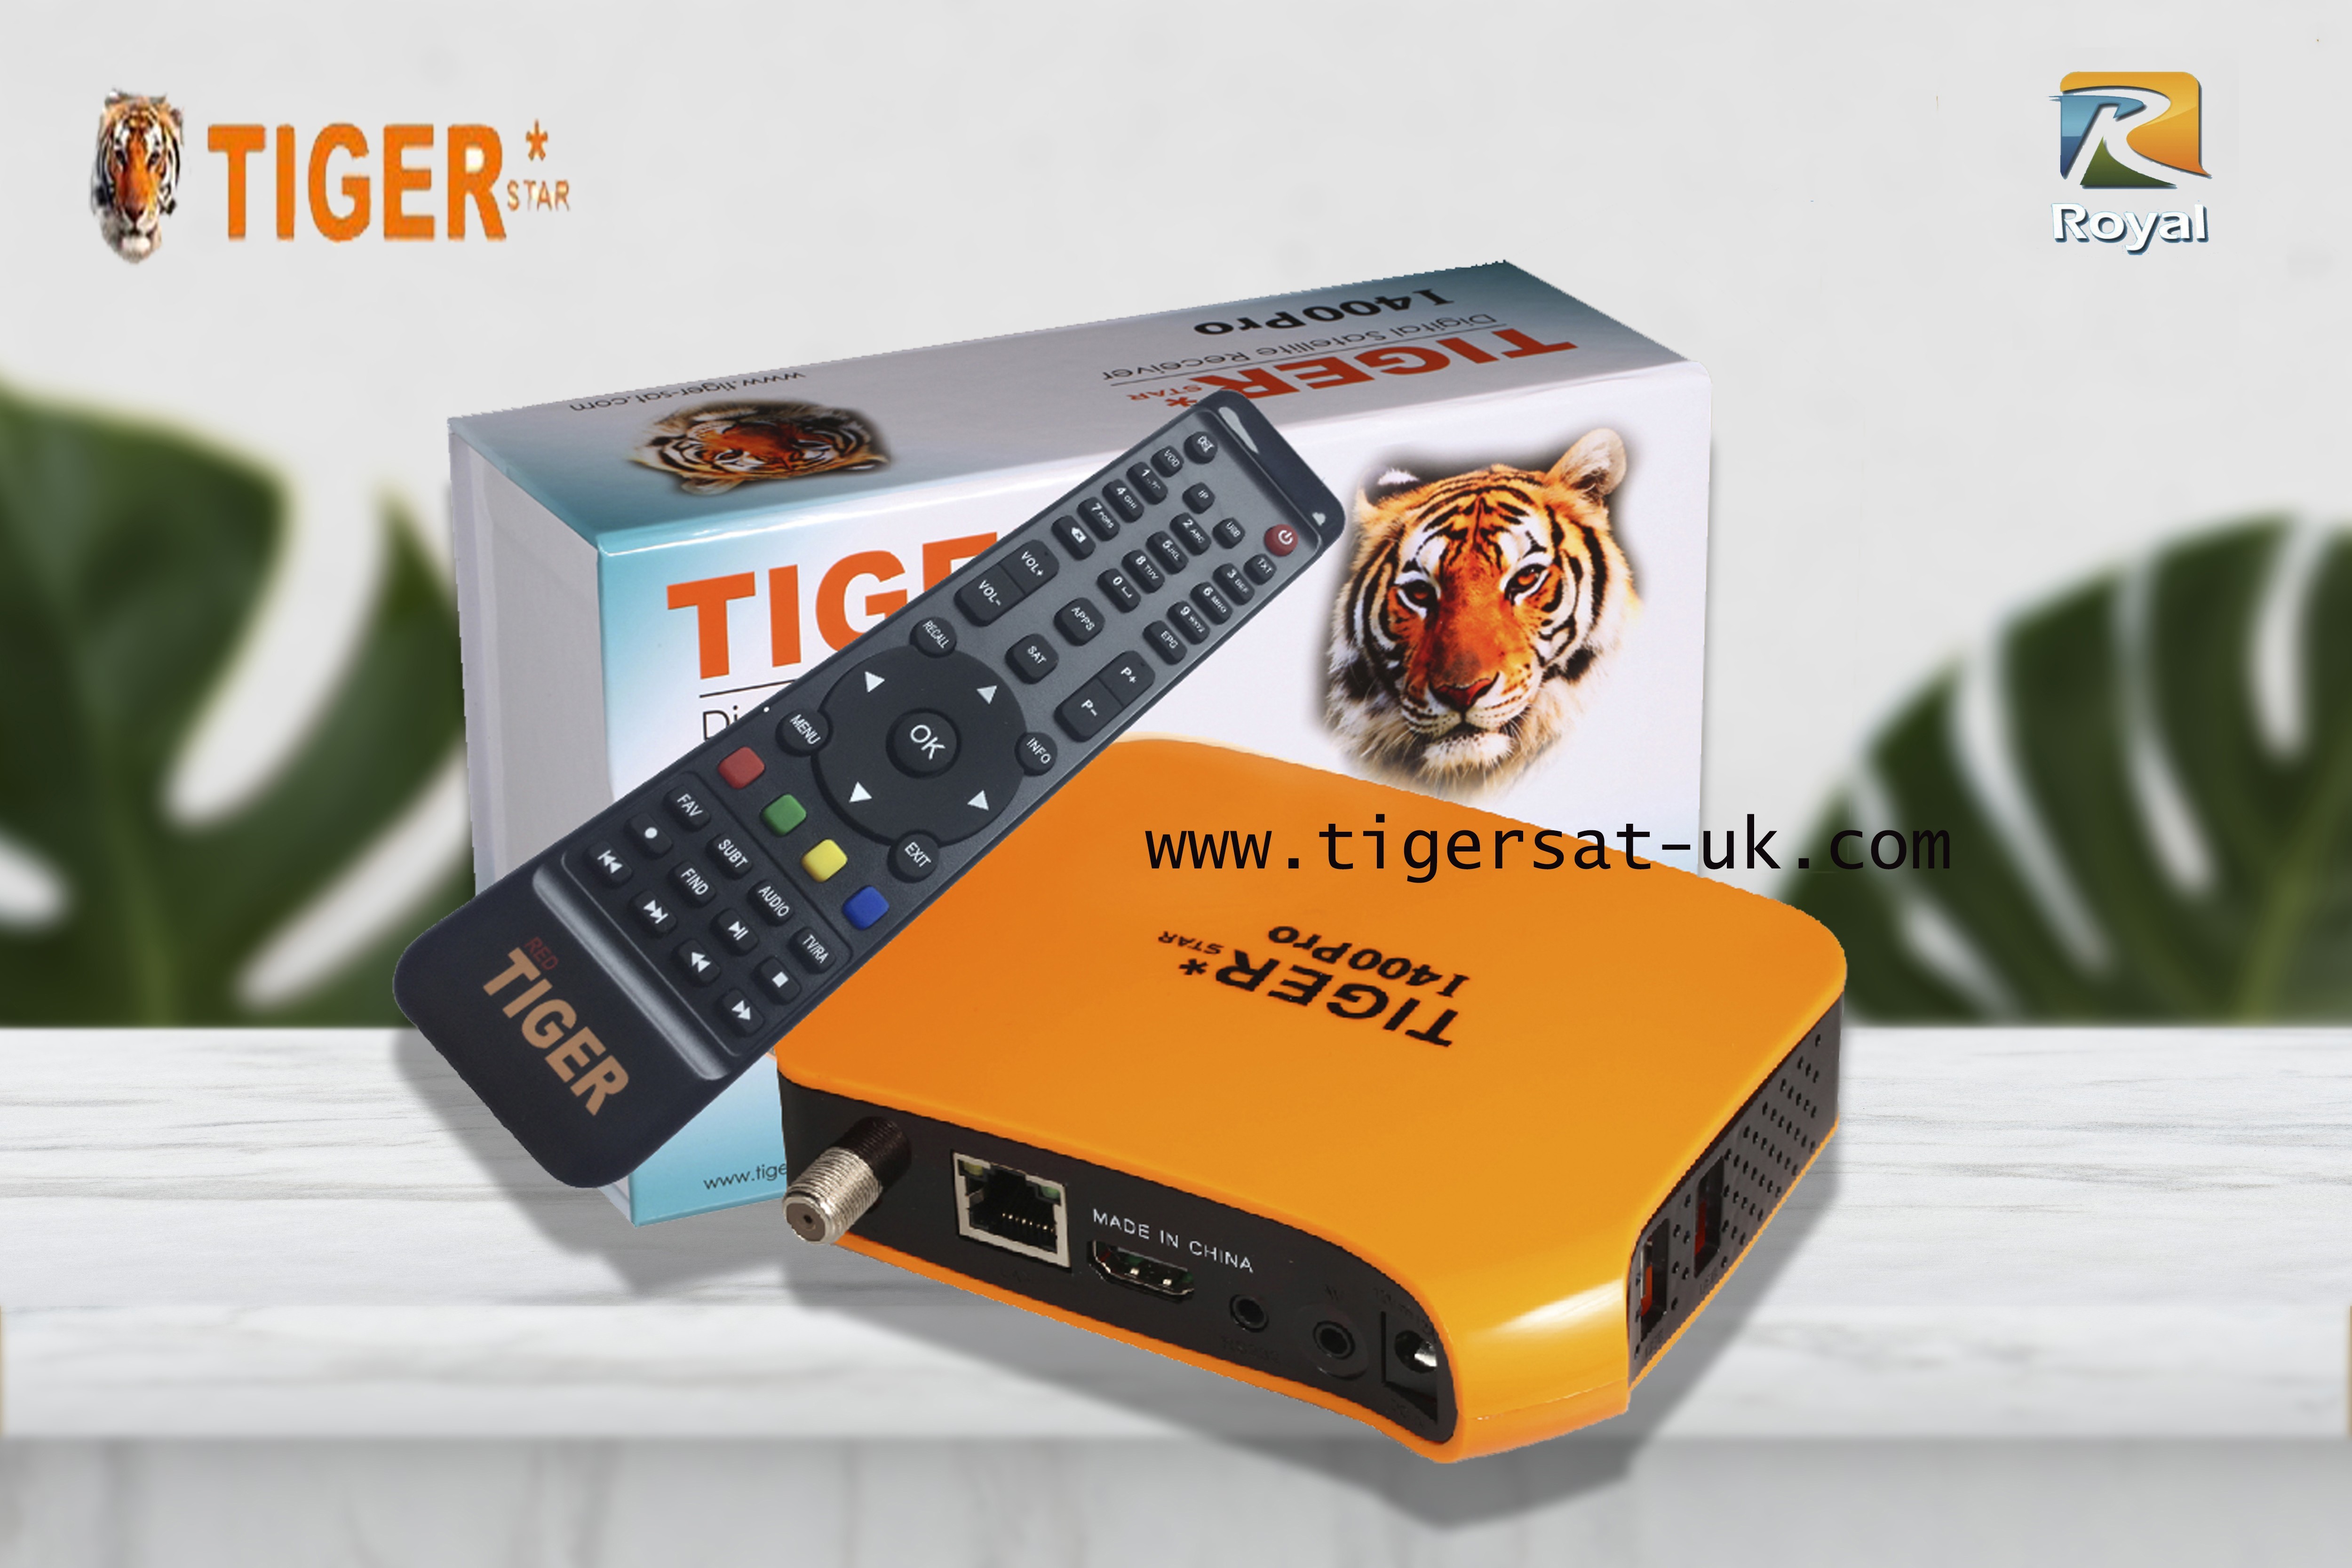 Tiger Star i400 Pro